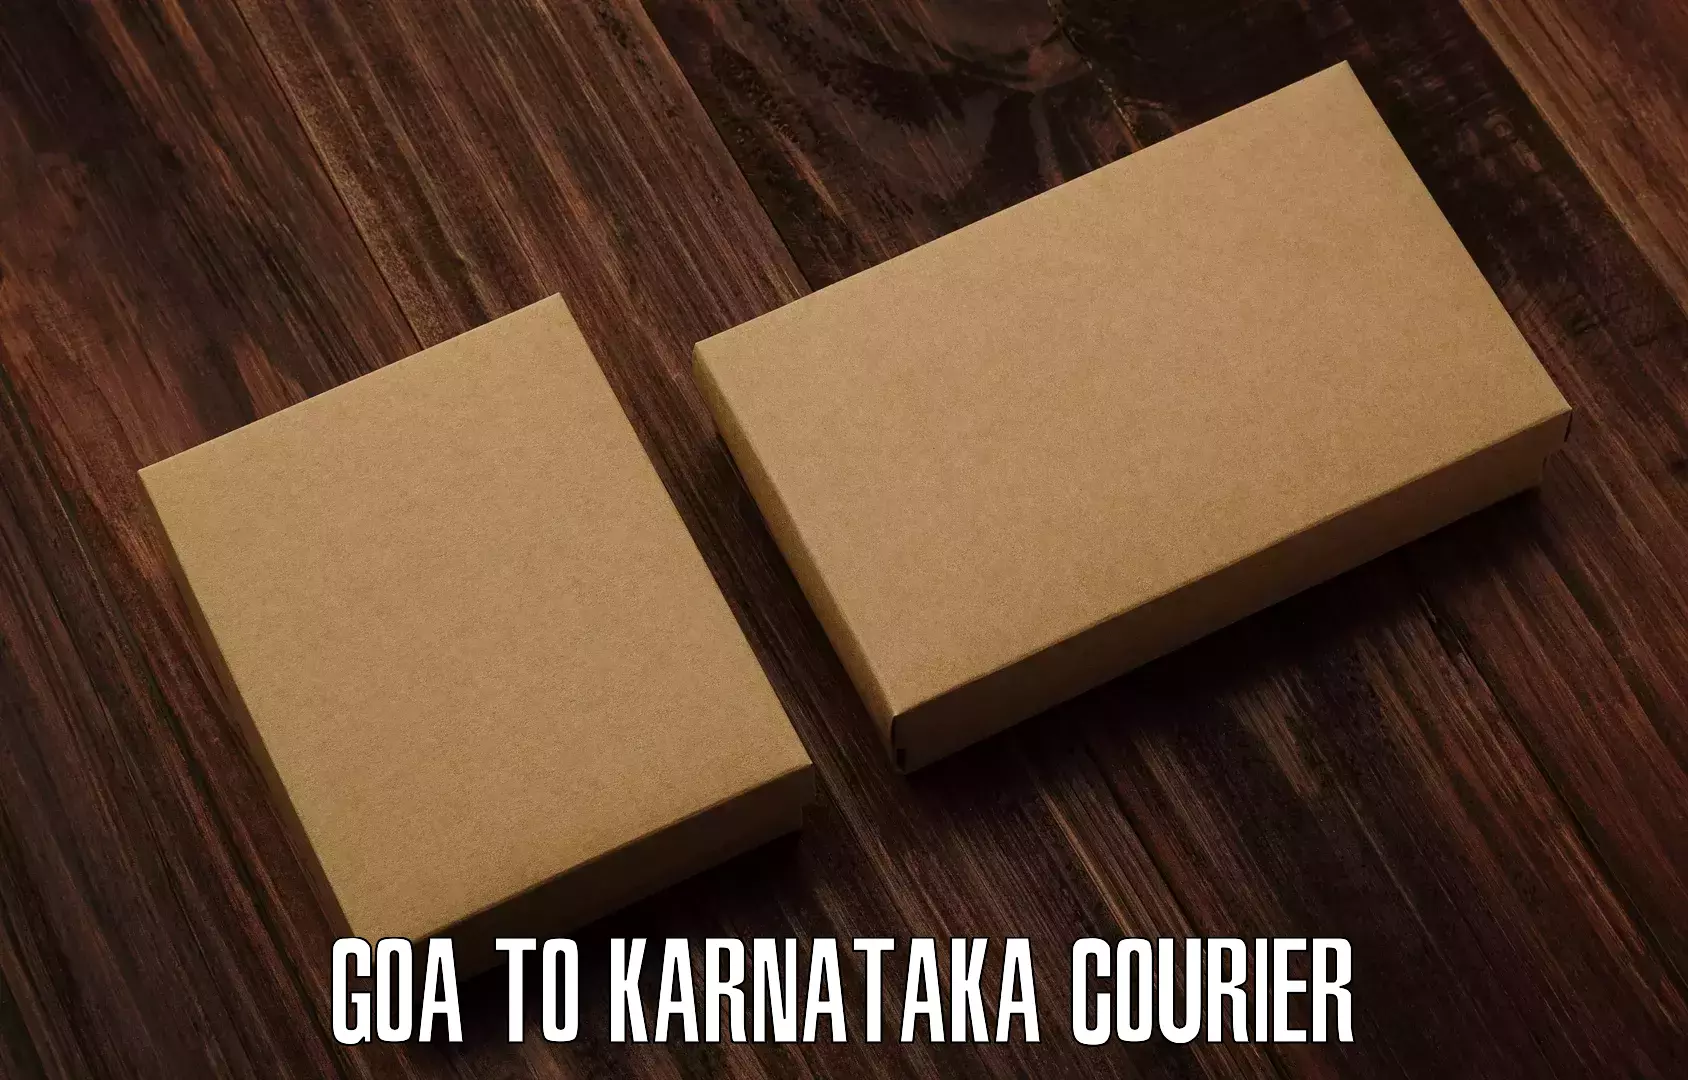 Weekend courier service Goa to Karnataka